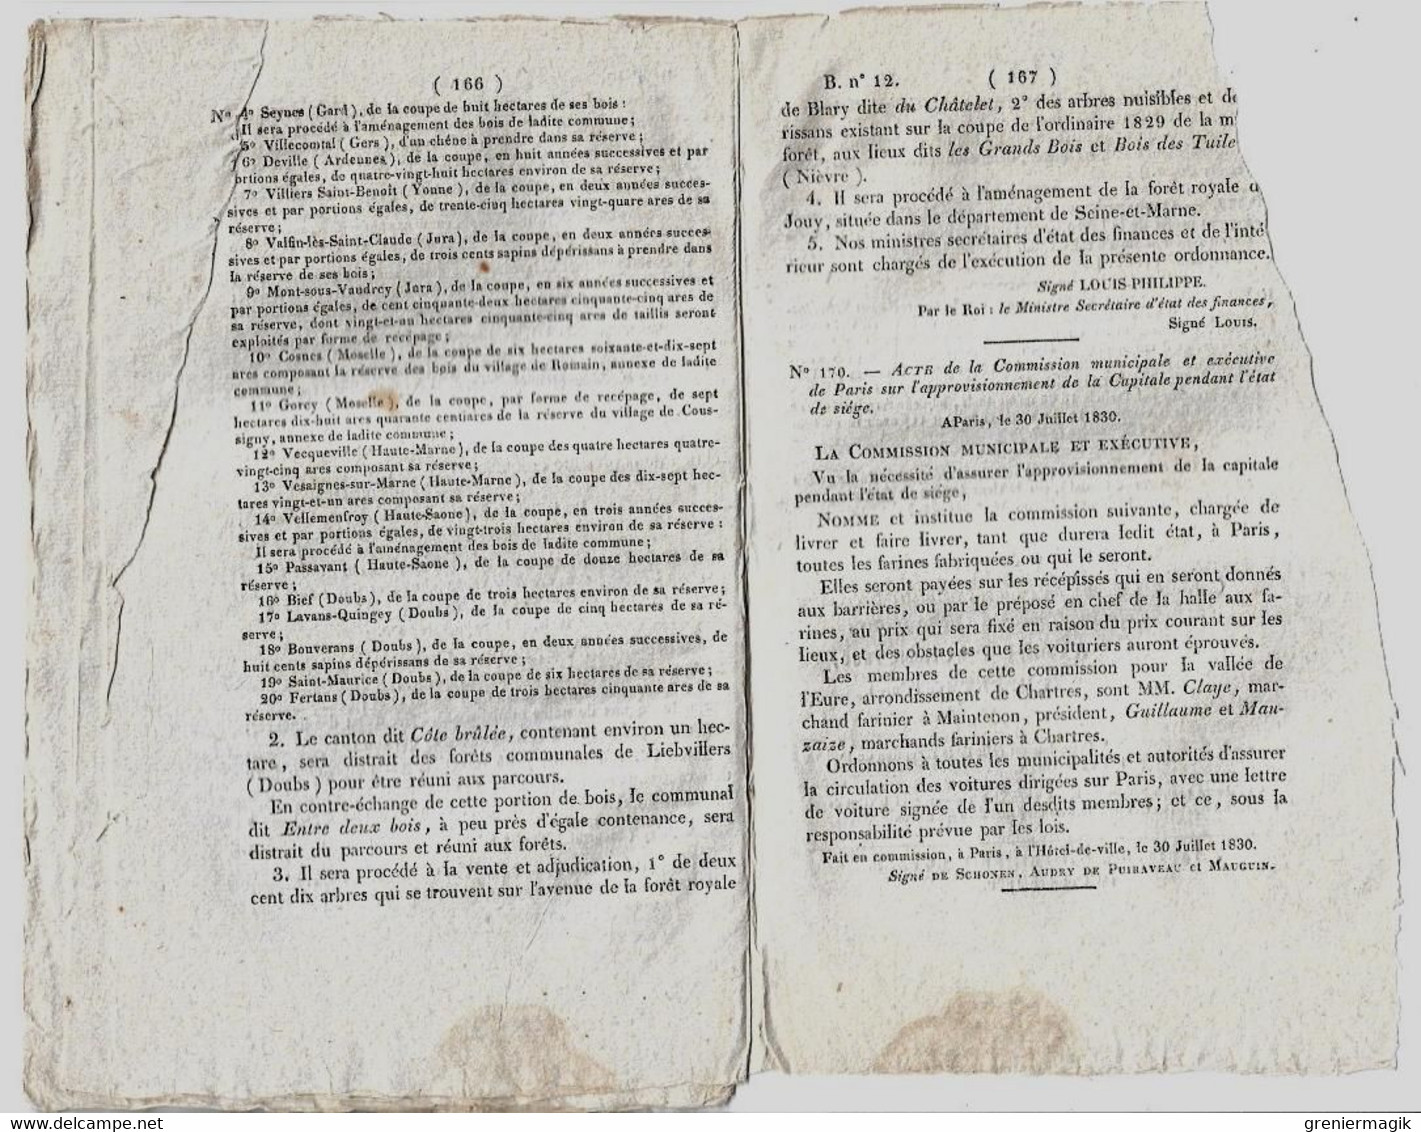 Bulletin des lois n°12 1830 Approvisionnement de Paris pendant état de siège (farines)/Amnistie contraventions de police